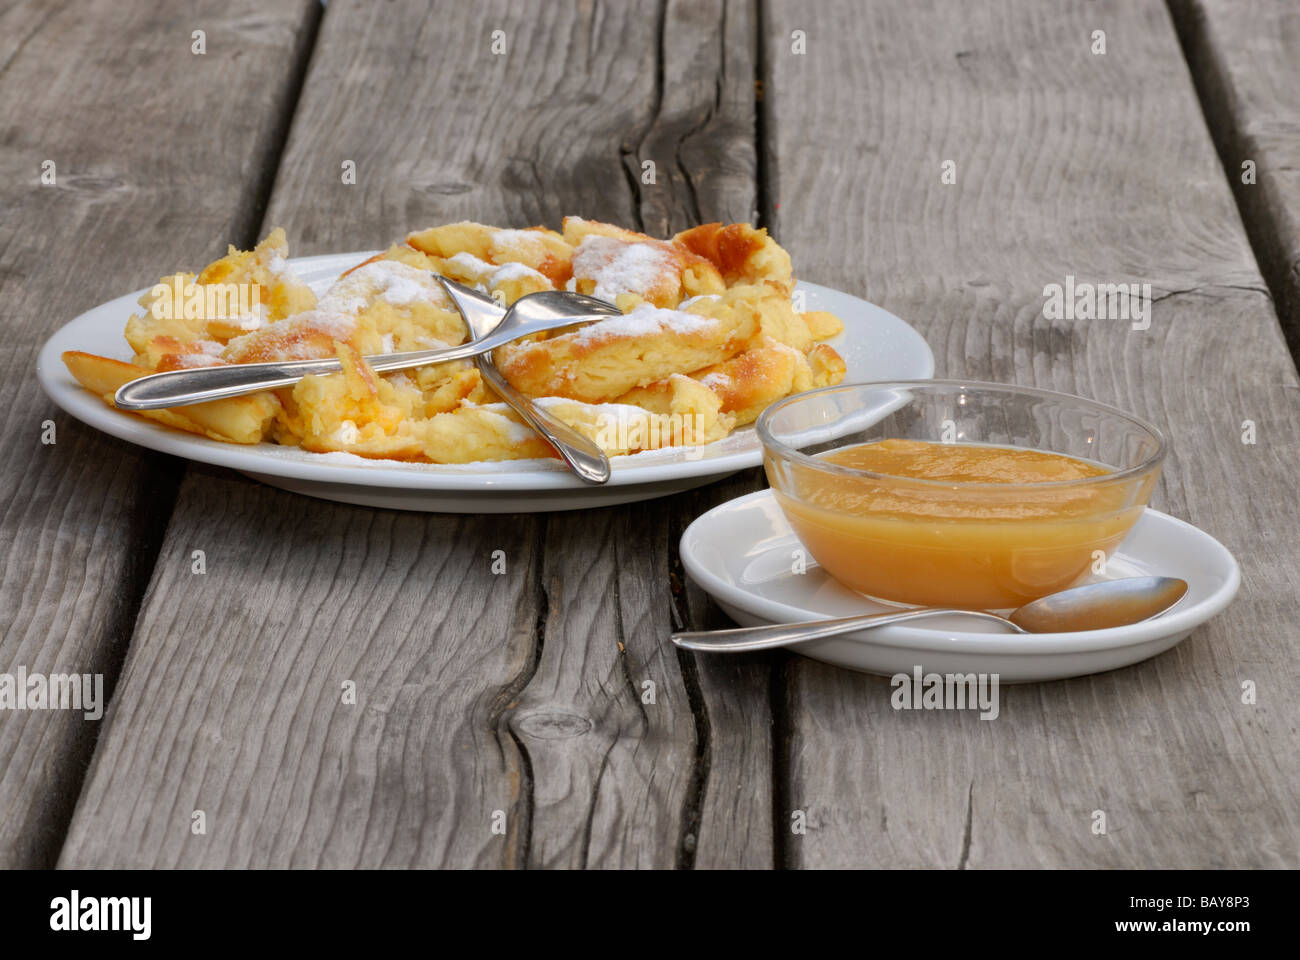 ein Teil der zerschnittenen und gezuckerten Pfannkuchen mit Apfel-Sauce auf Holztisch, Alphütte Sulzenaualm, Sulzaualm, Stubaier Alpen ra Stockfoto